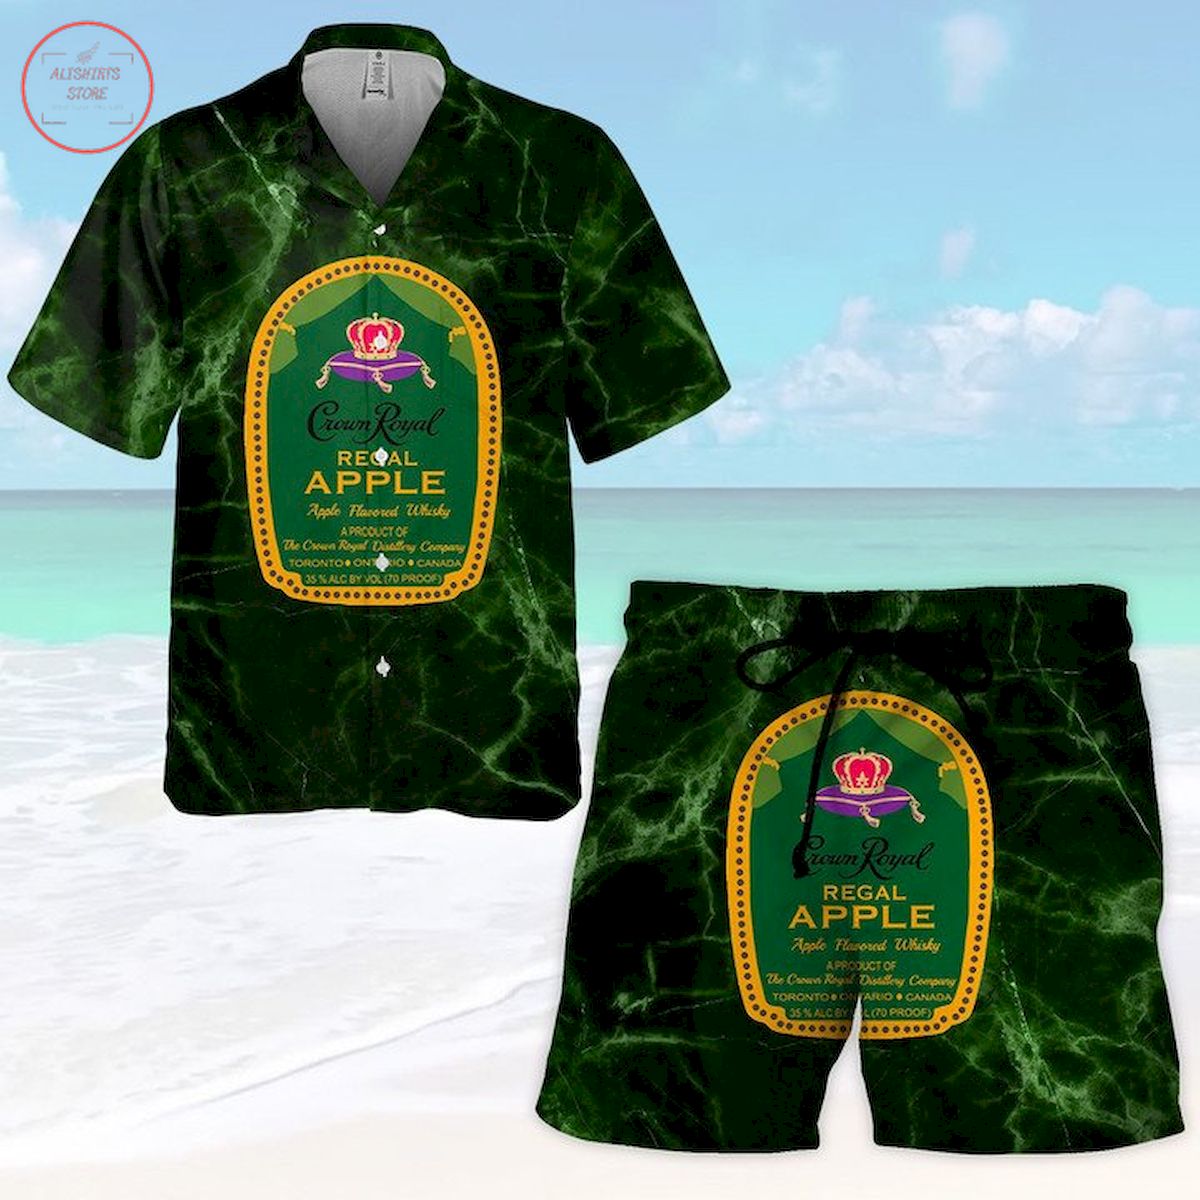 Crown Royal Regal Apple Hawaiian Shirt and Shorts